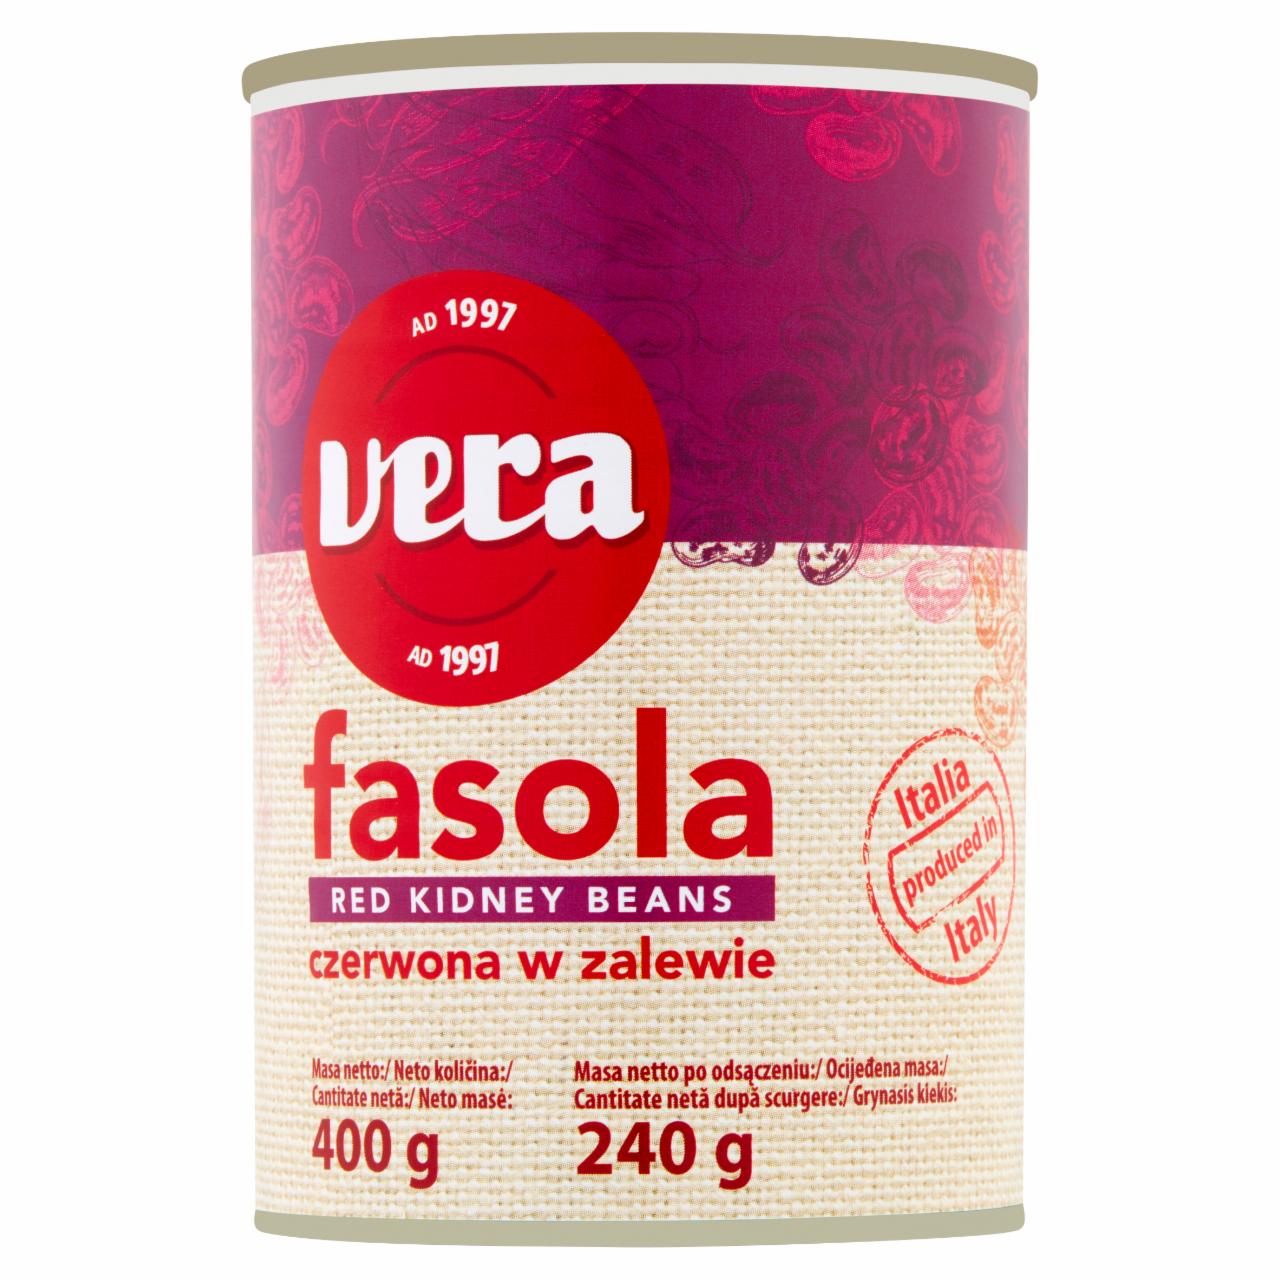 Zdjęcia - Vera Fasola czerwona w zalewie 400 g